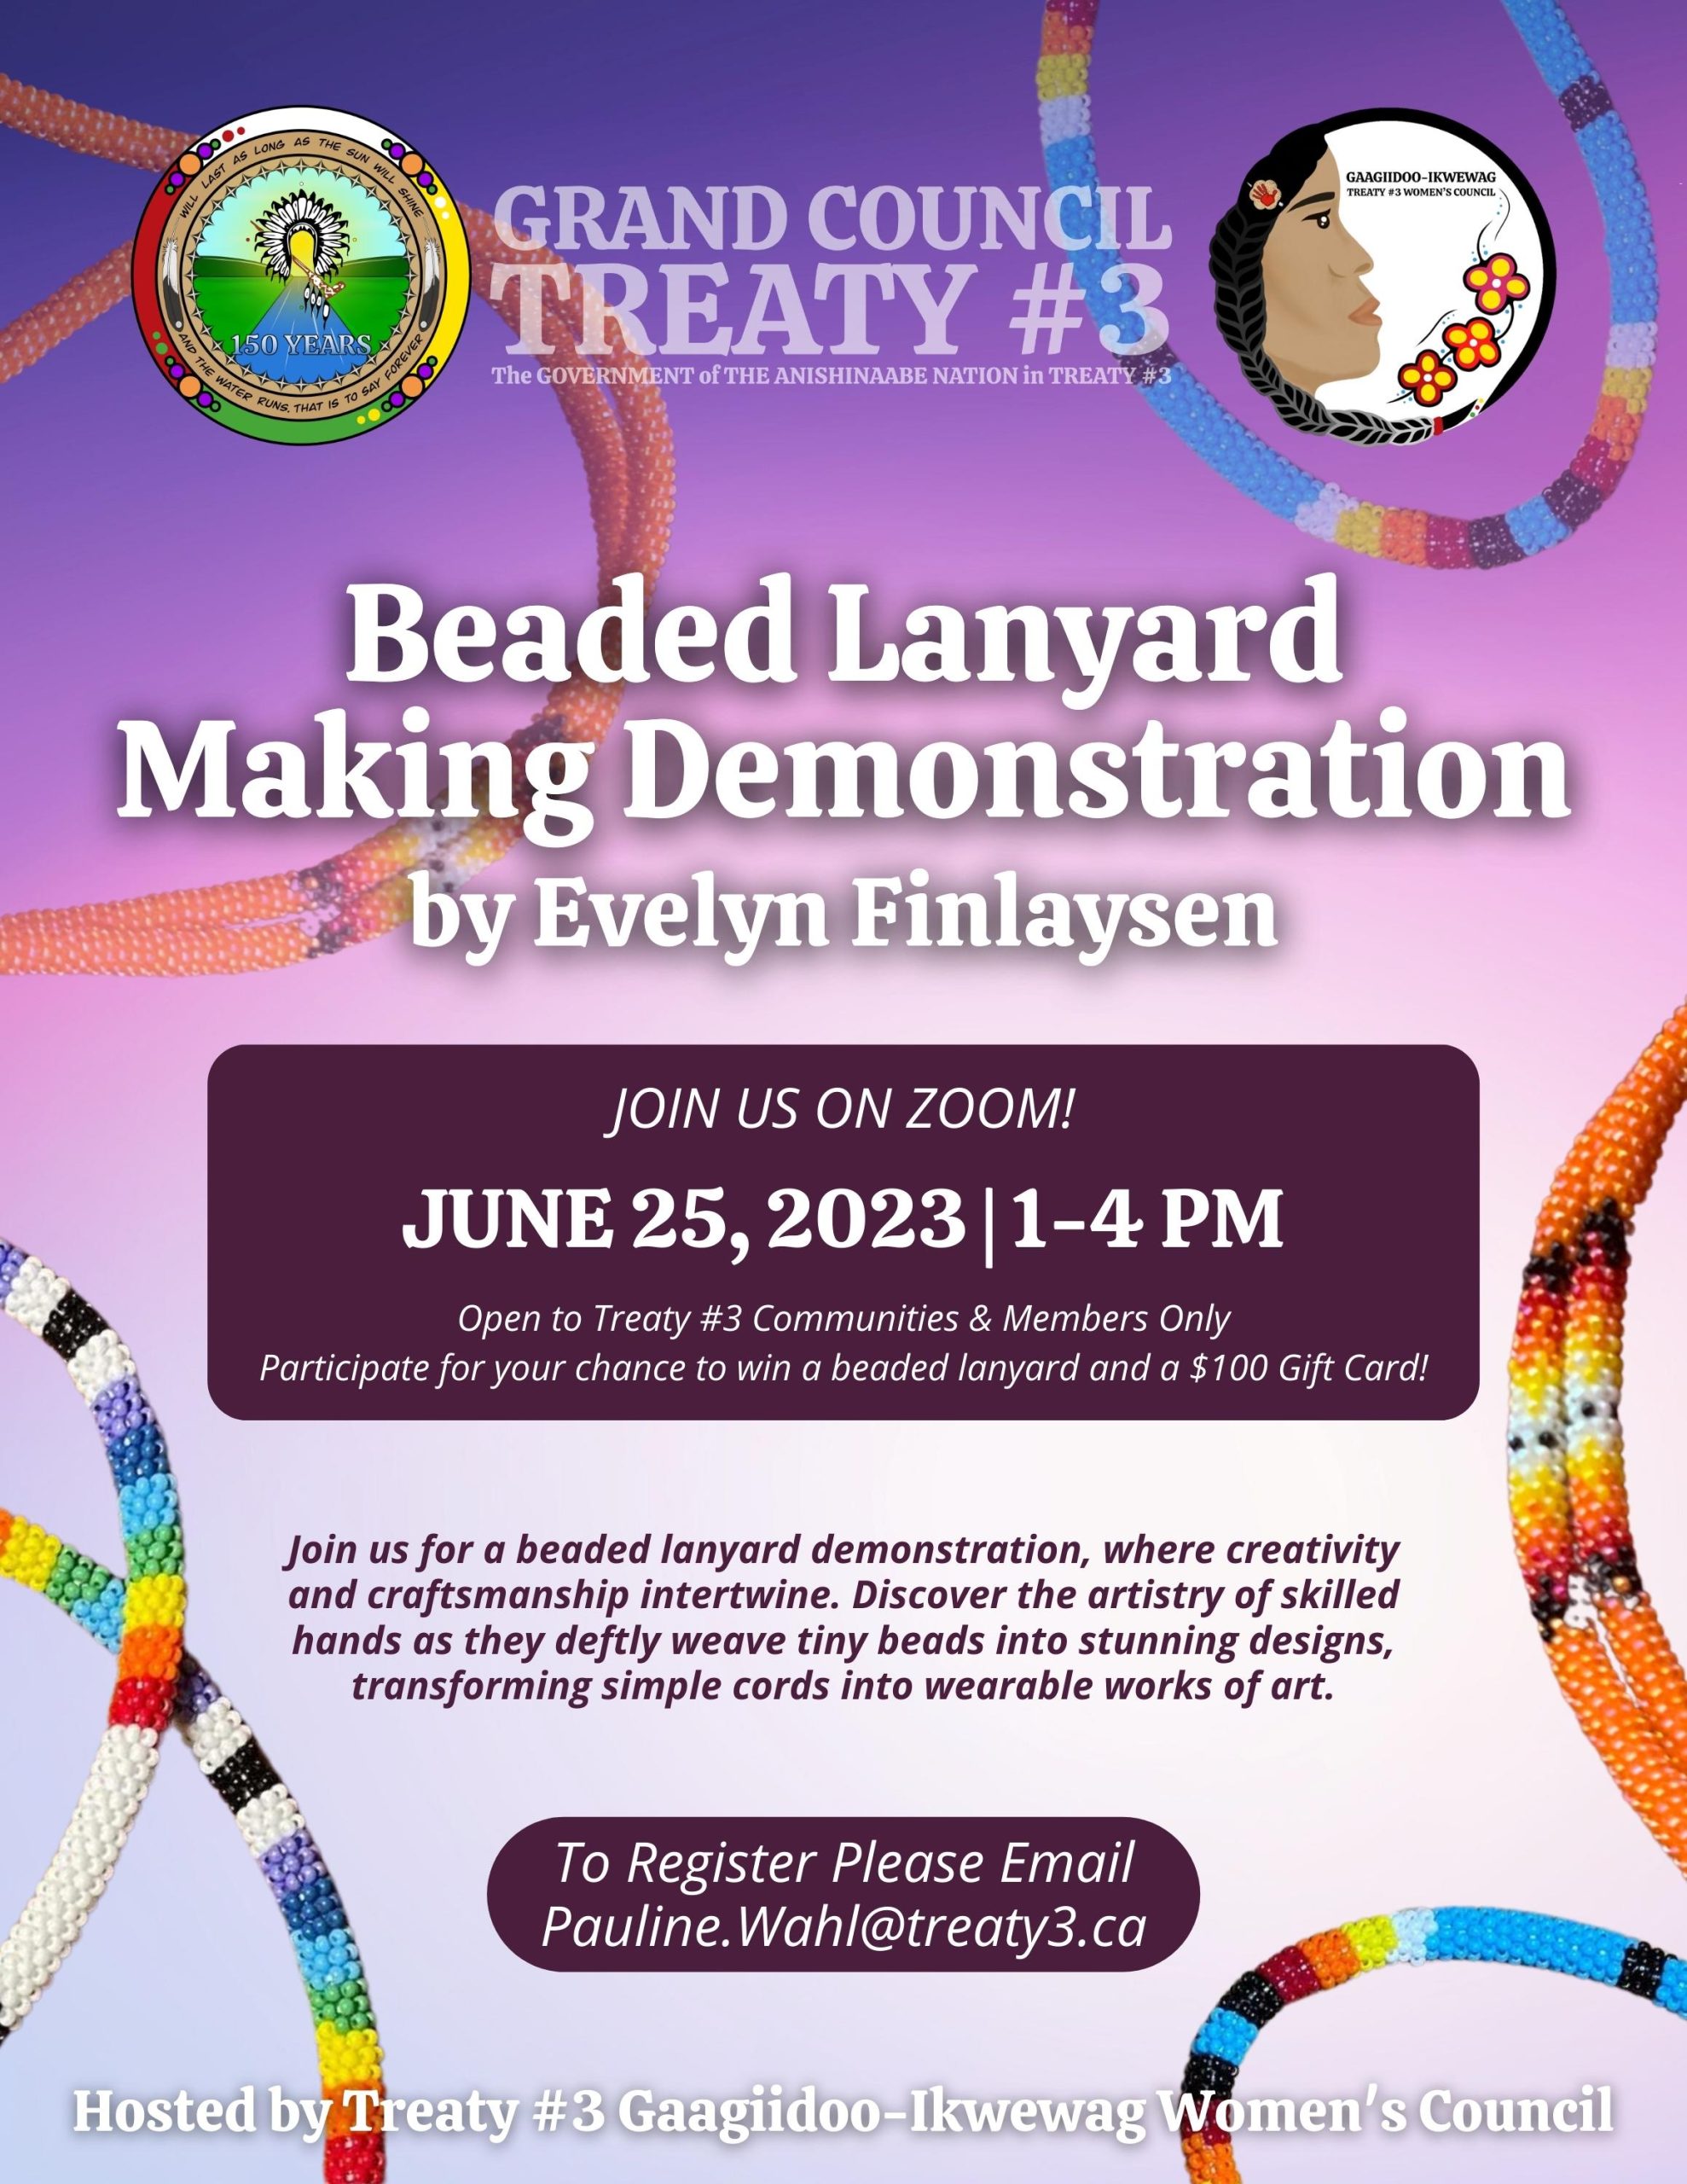 Beaded Lanyard Making Demonstration